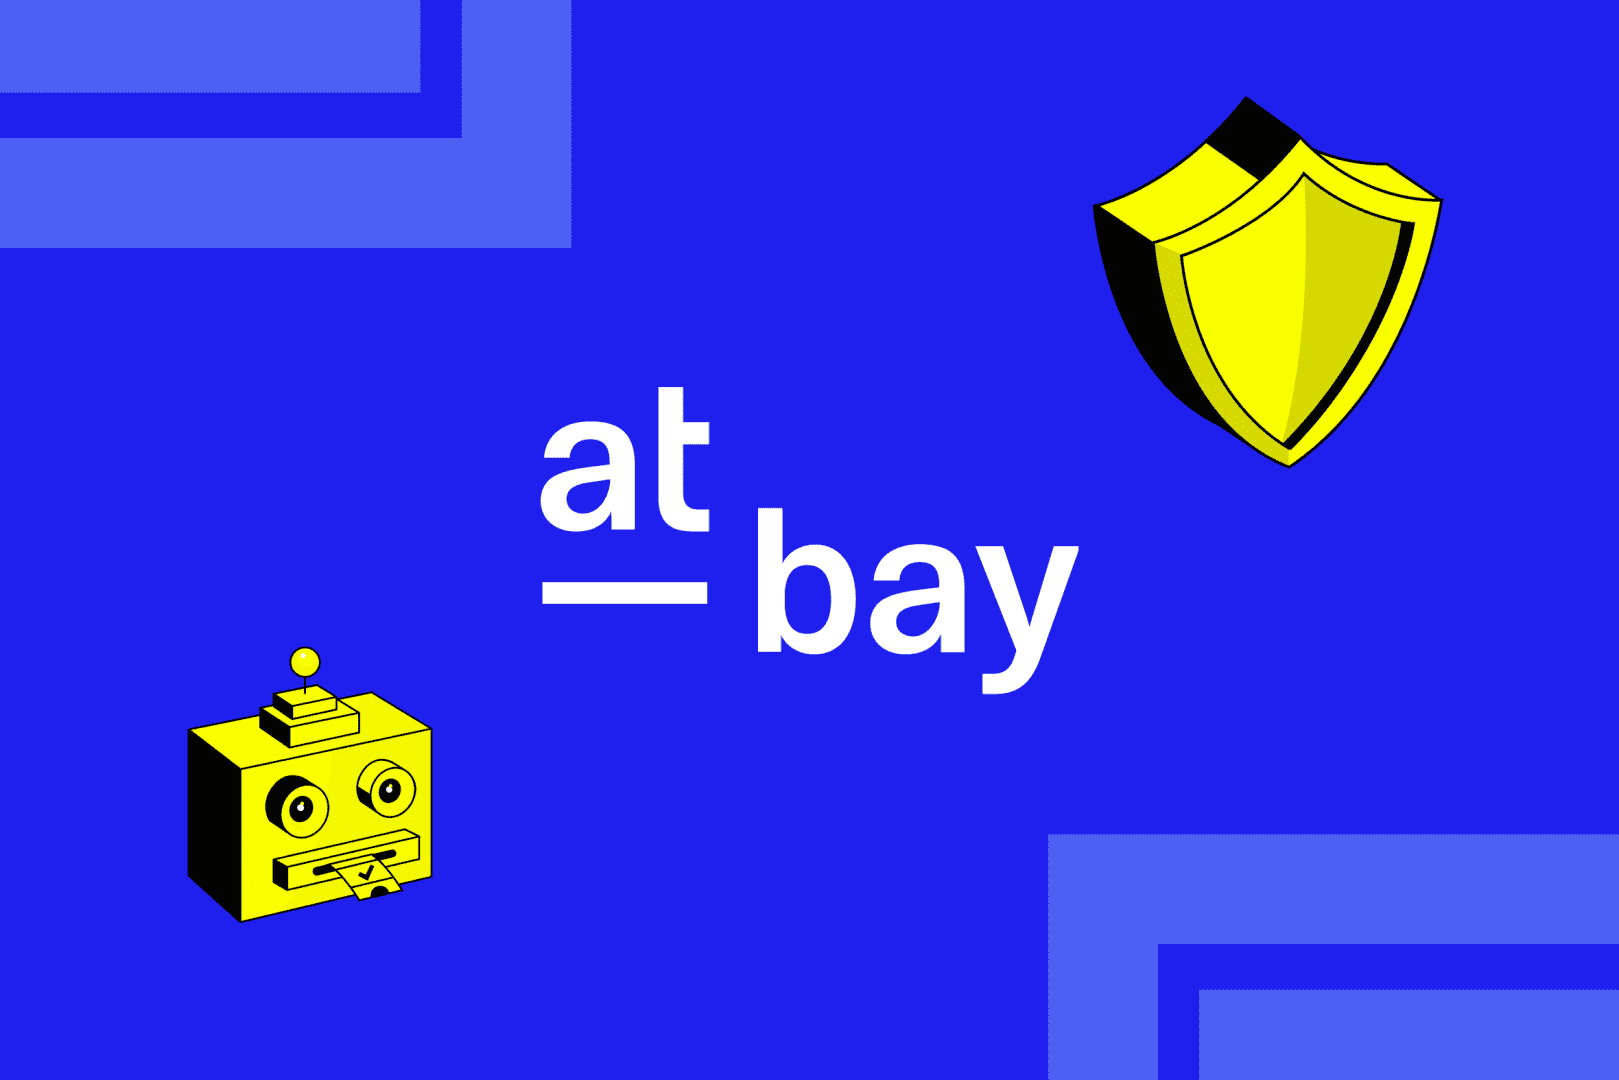 At-Bay logo